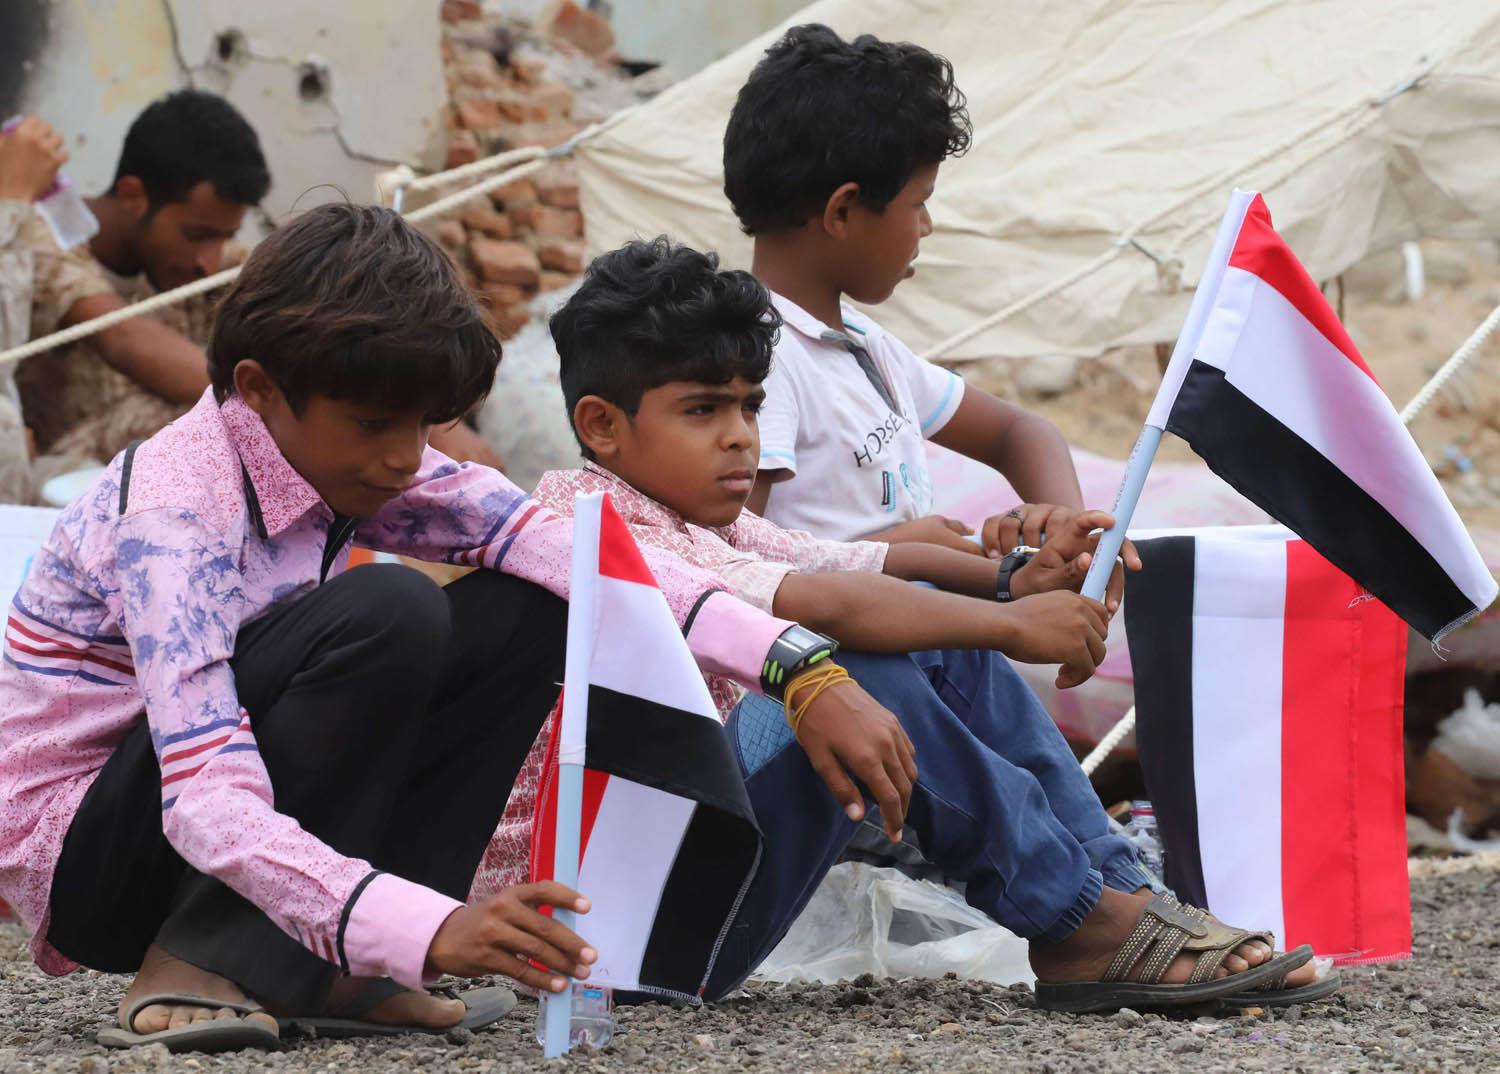 أطفال يمنيون يرفعون اعلاما في احتفال لبرنامج المساعدات السعودي لليمن في حجة